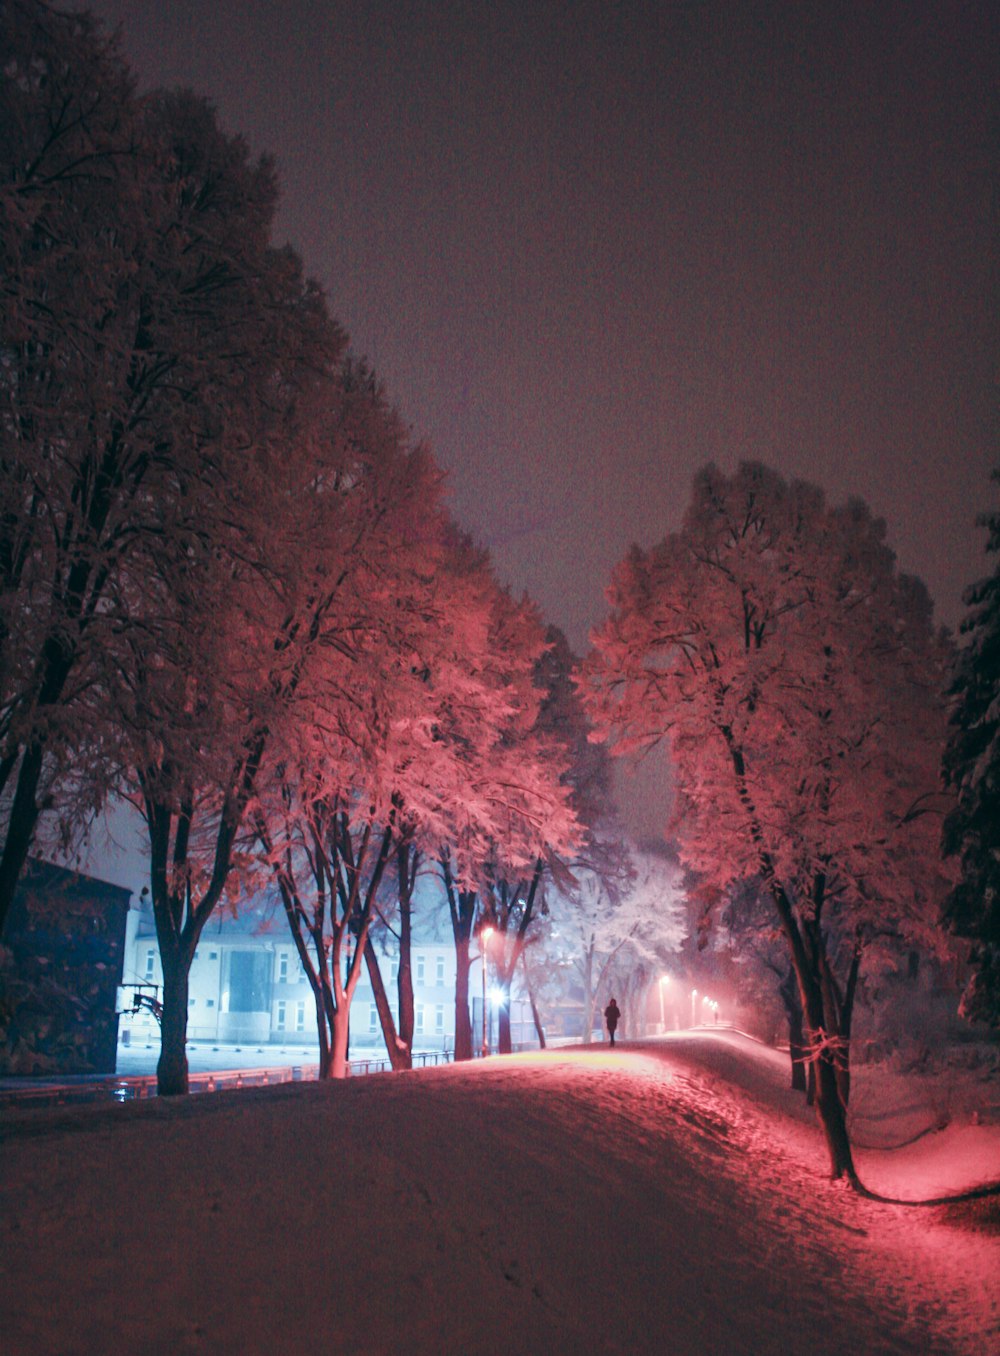 pessoa caminhando em terreno coberto de neve perto de árvores e edifícios